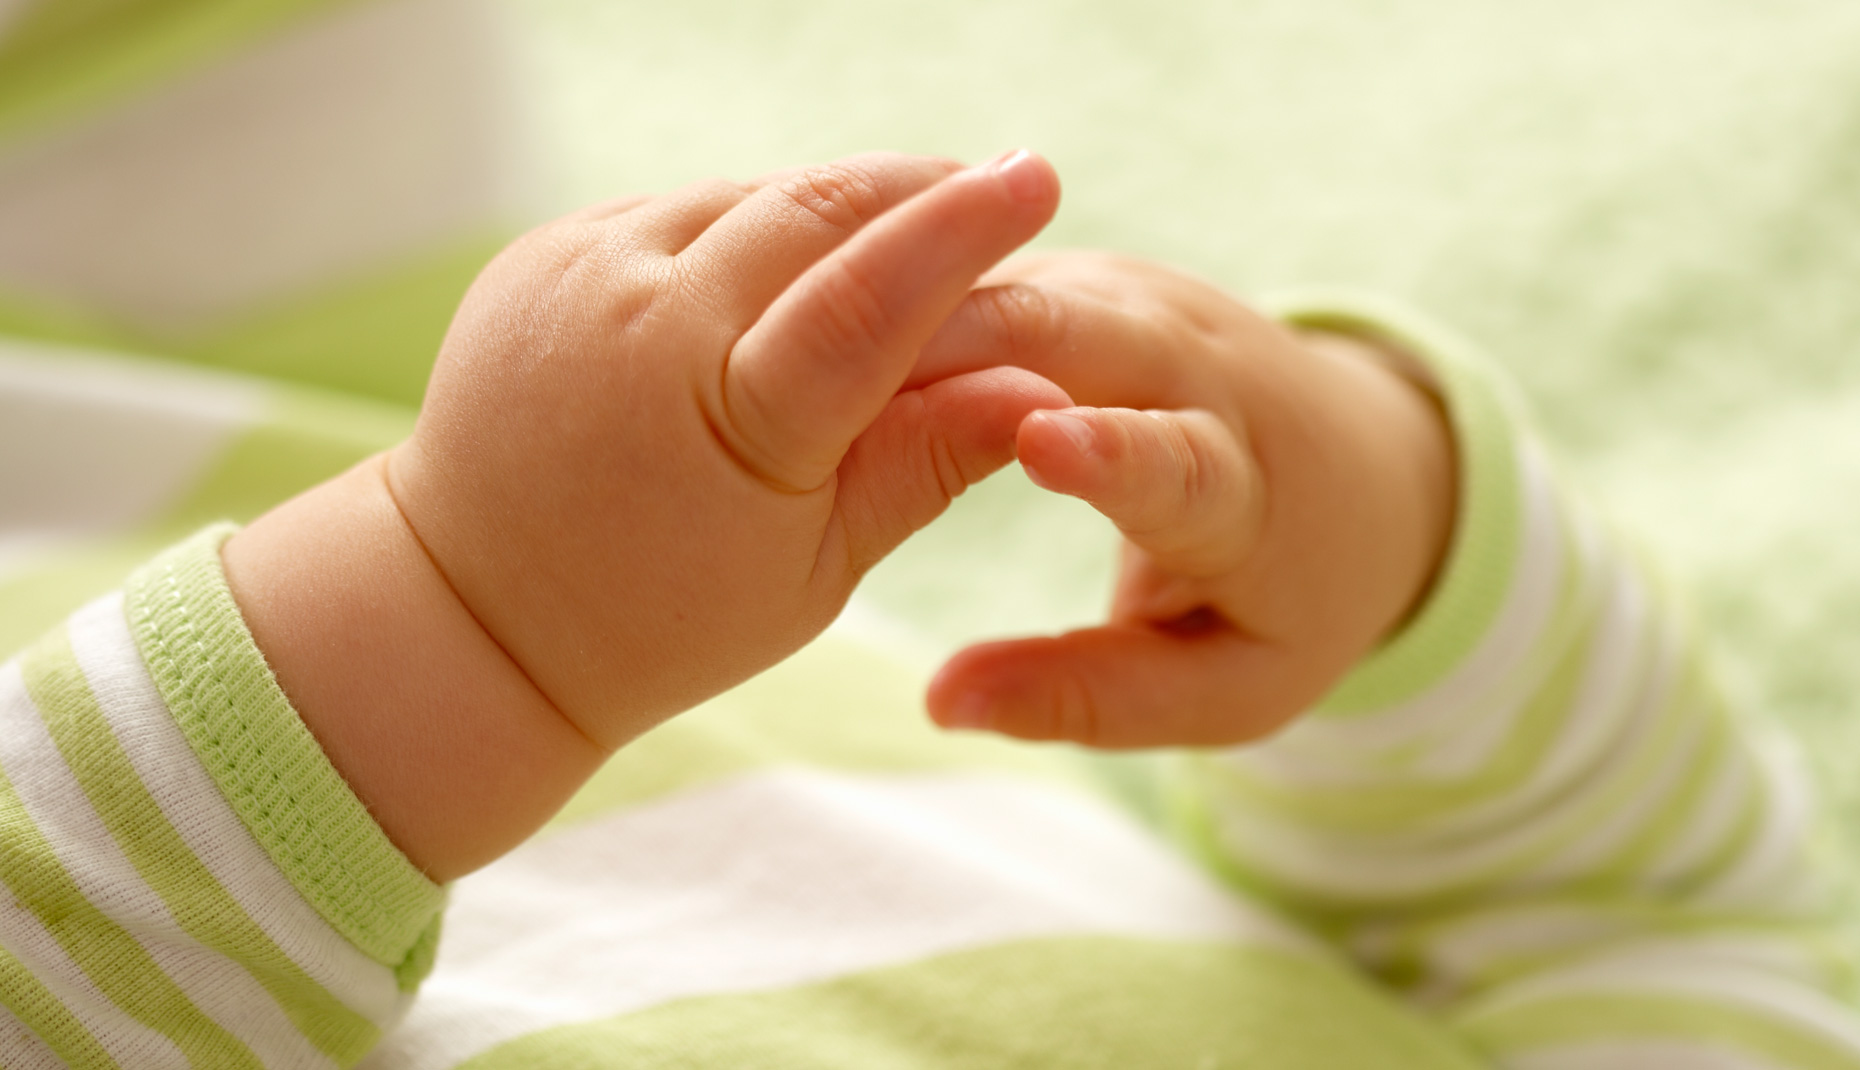 Babies: Hands